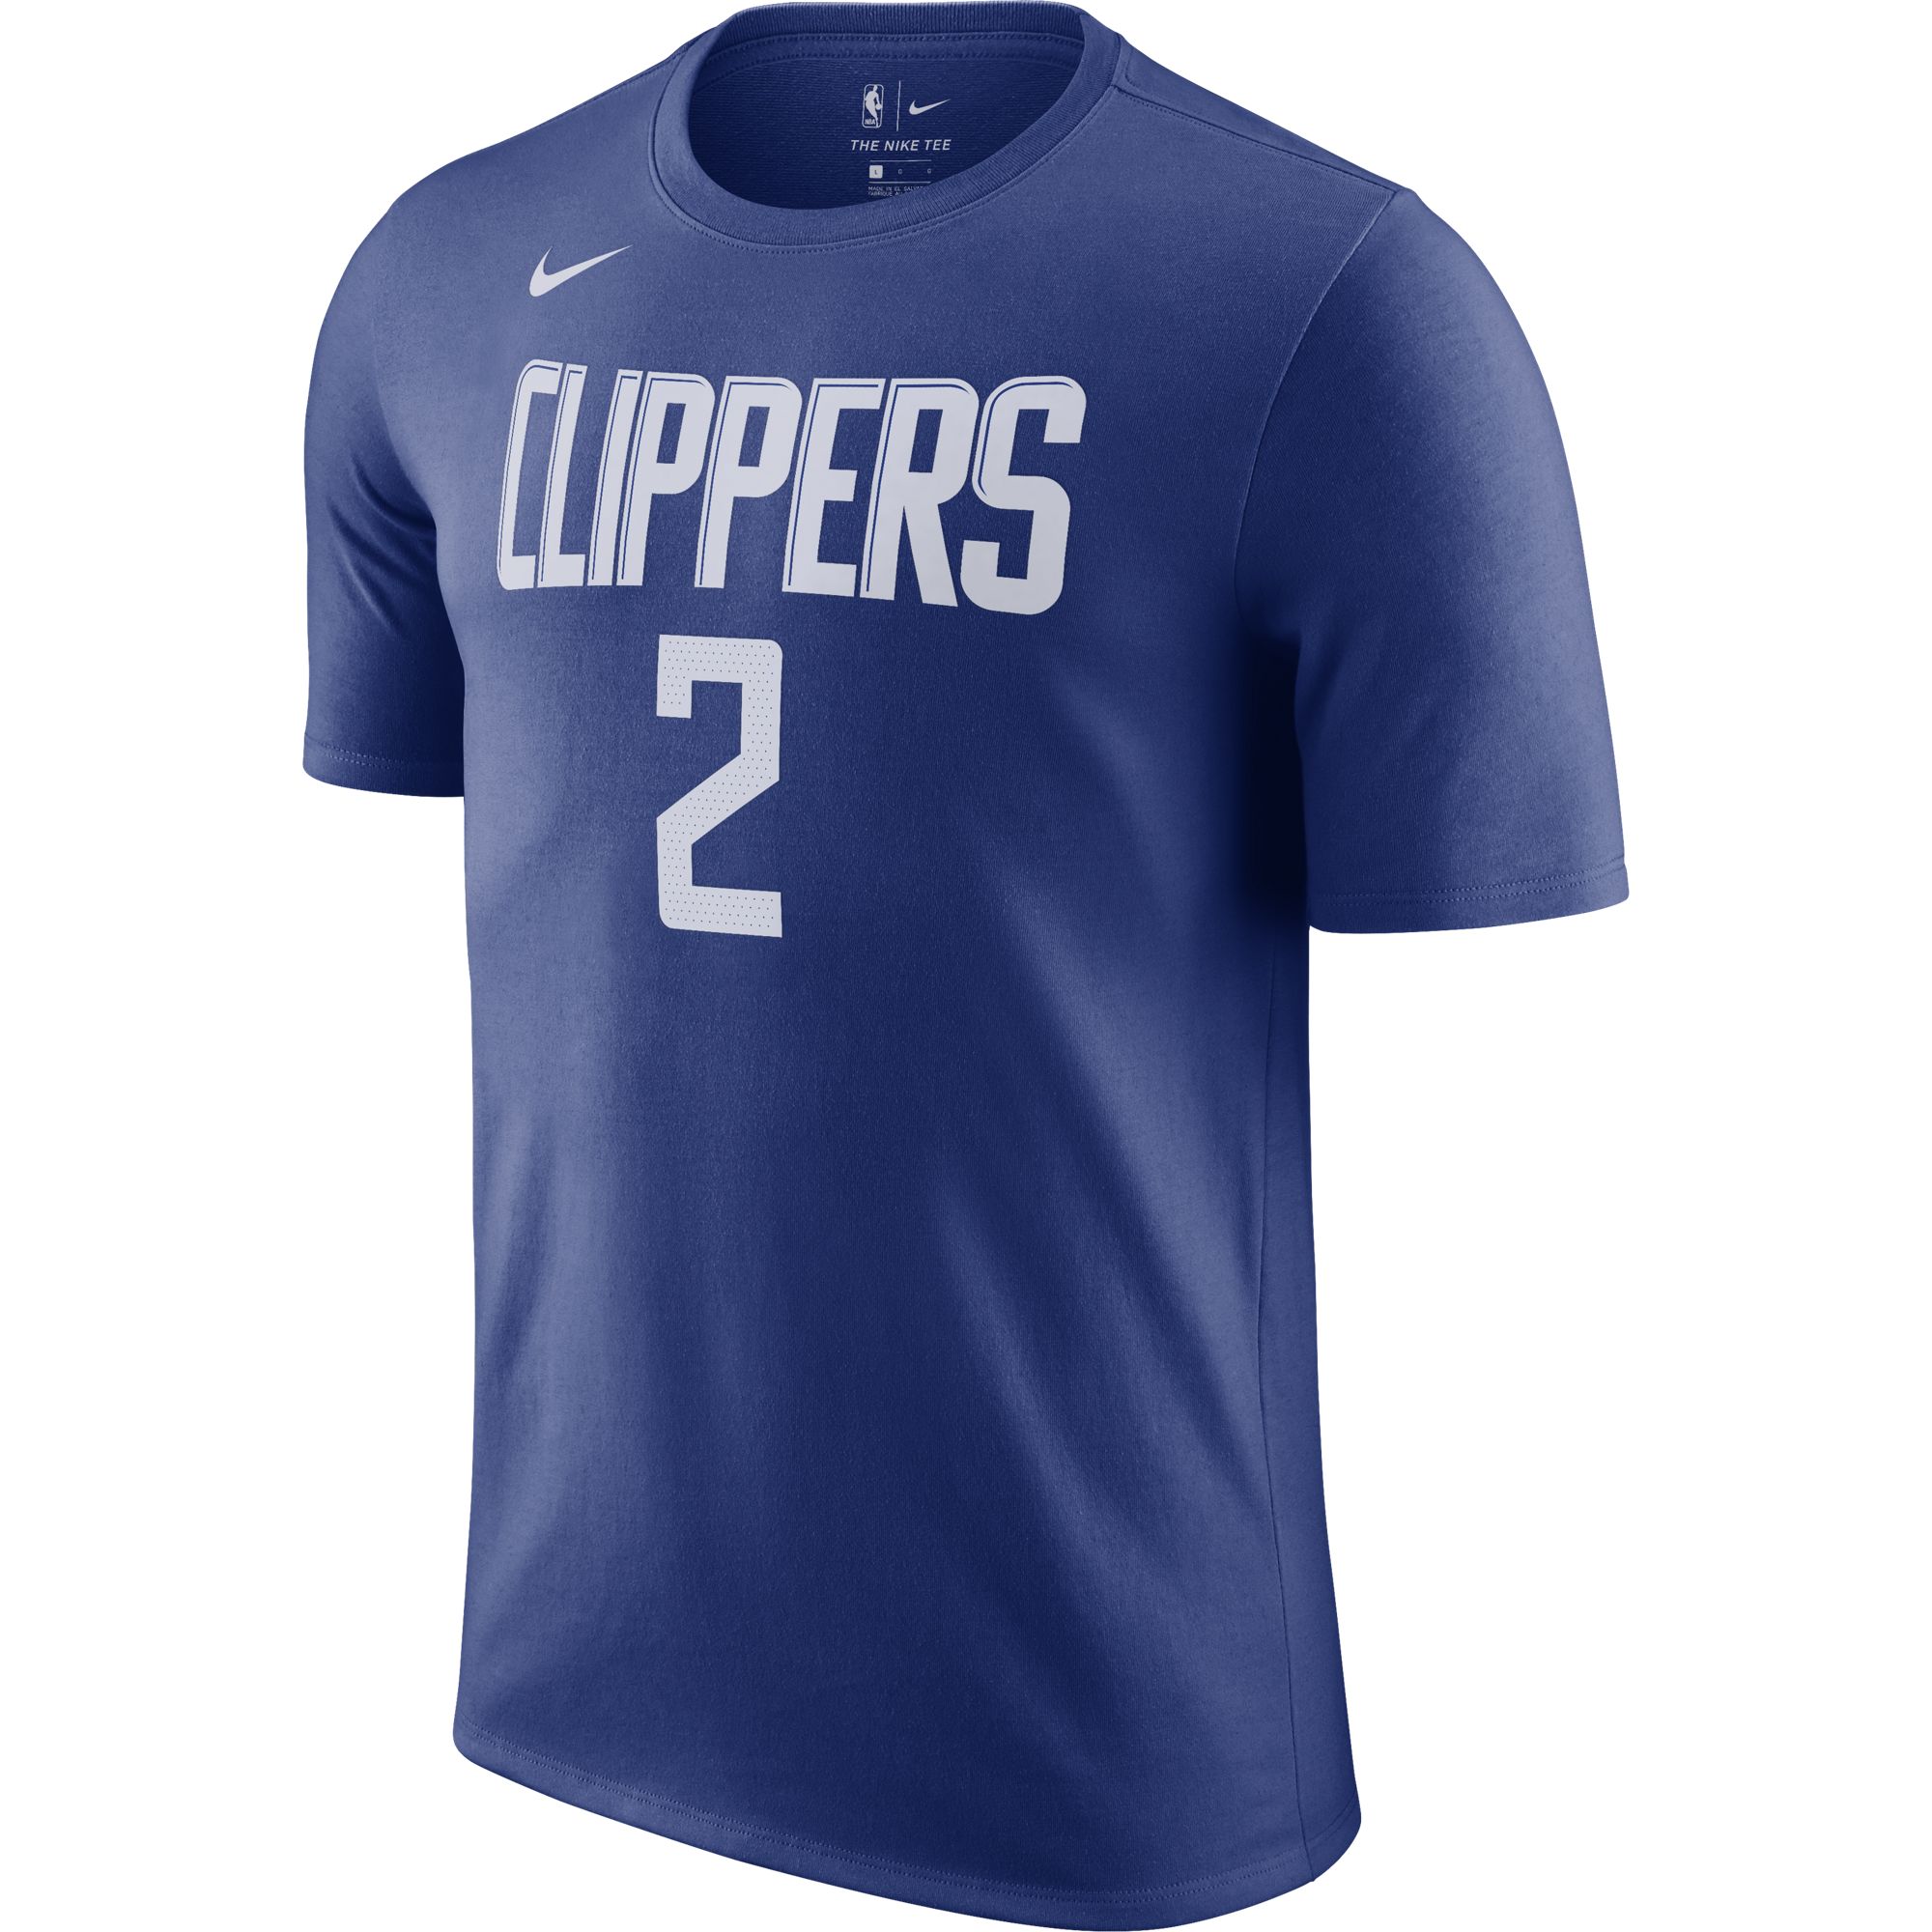 Футболка Nike Clippers - картинка